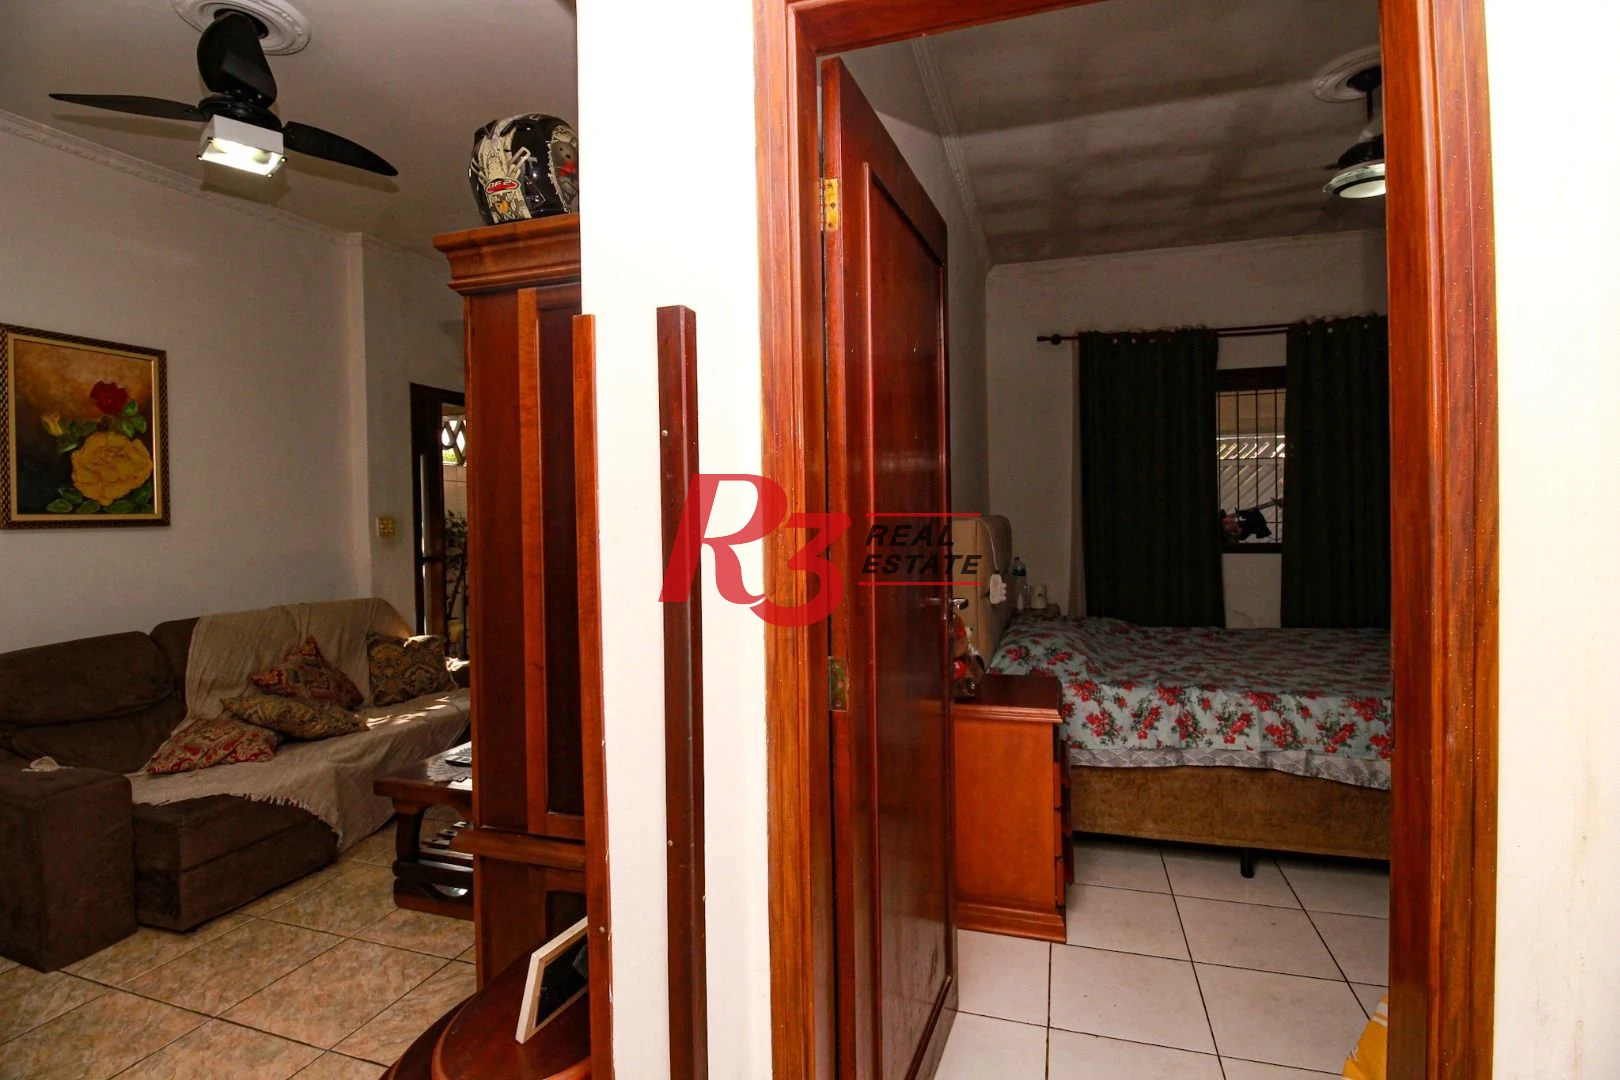 Excelente casa de 3 dormitórios à venda no Bom Retiro em Santos.